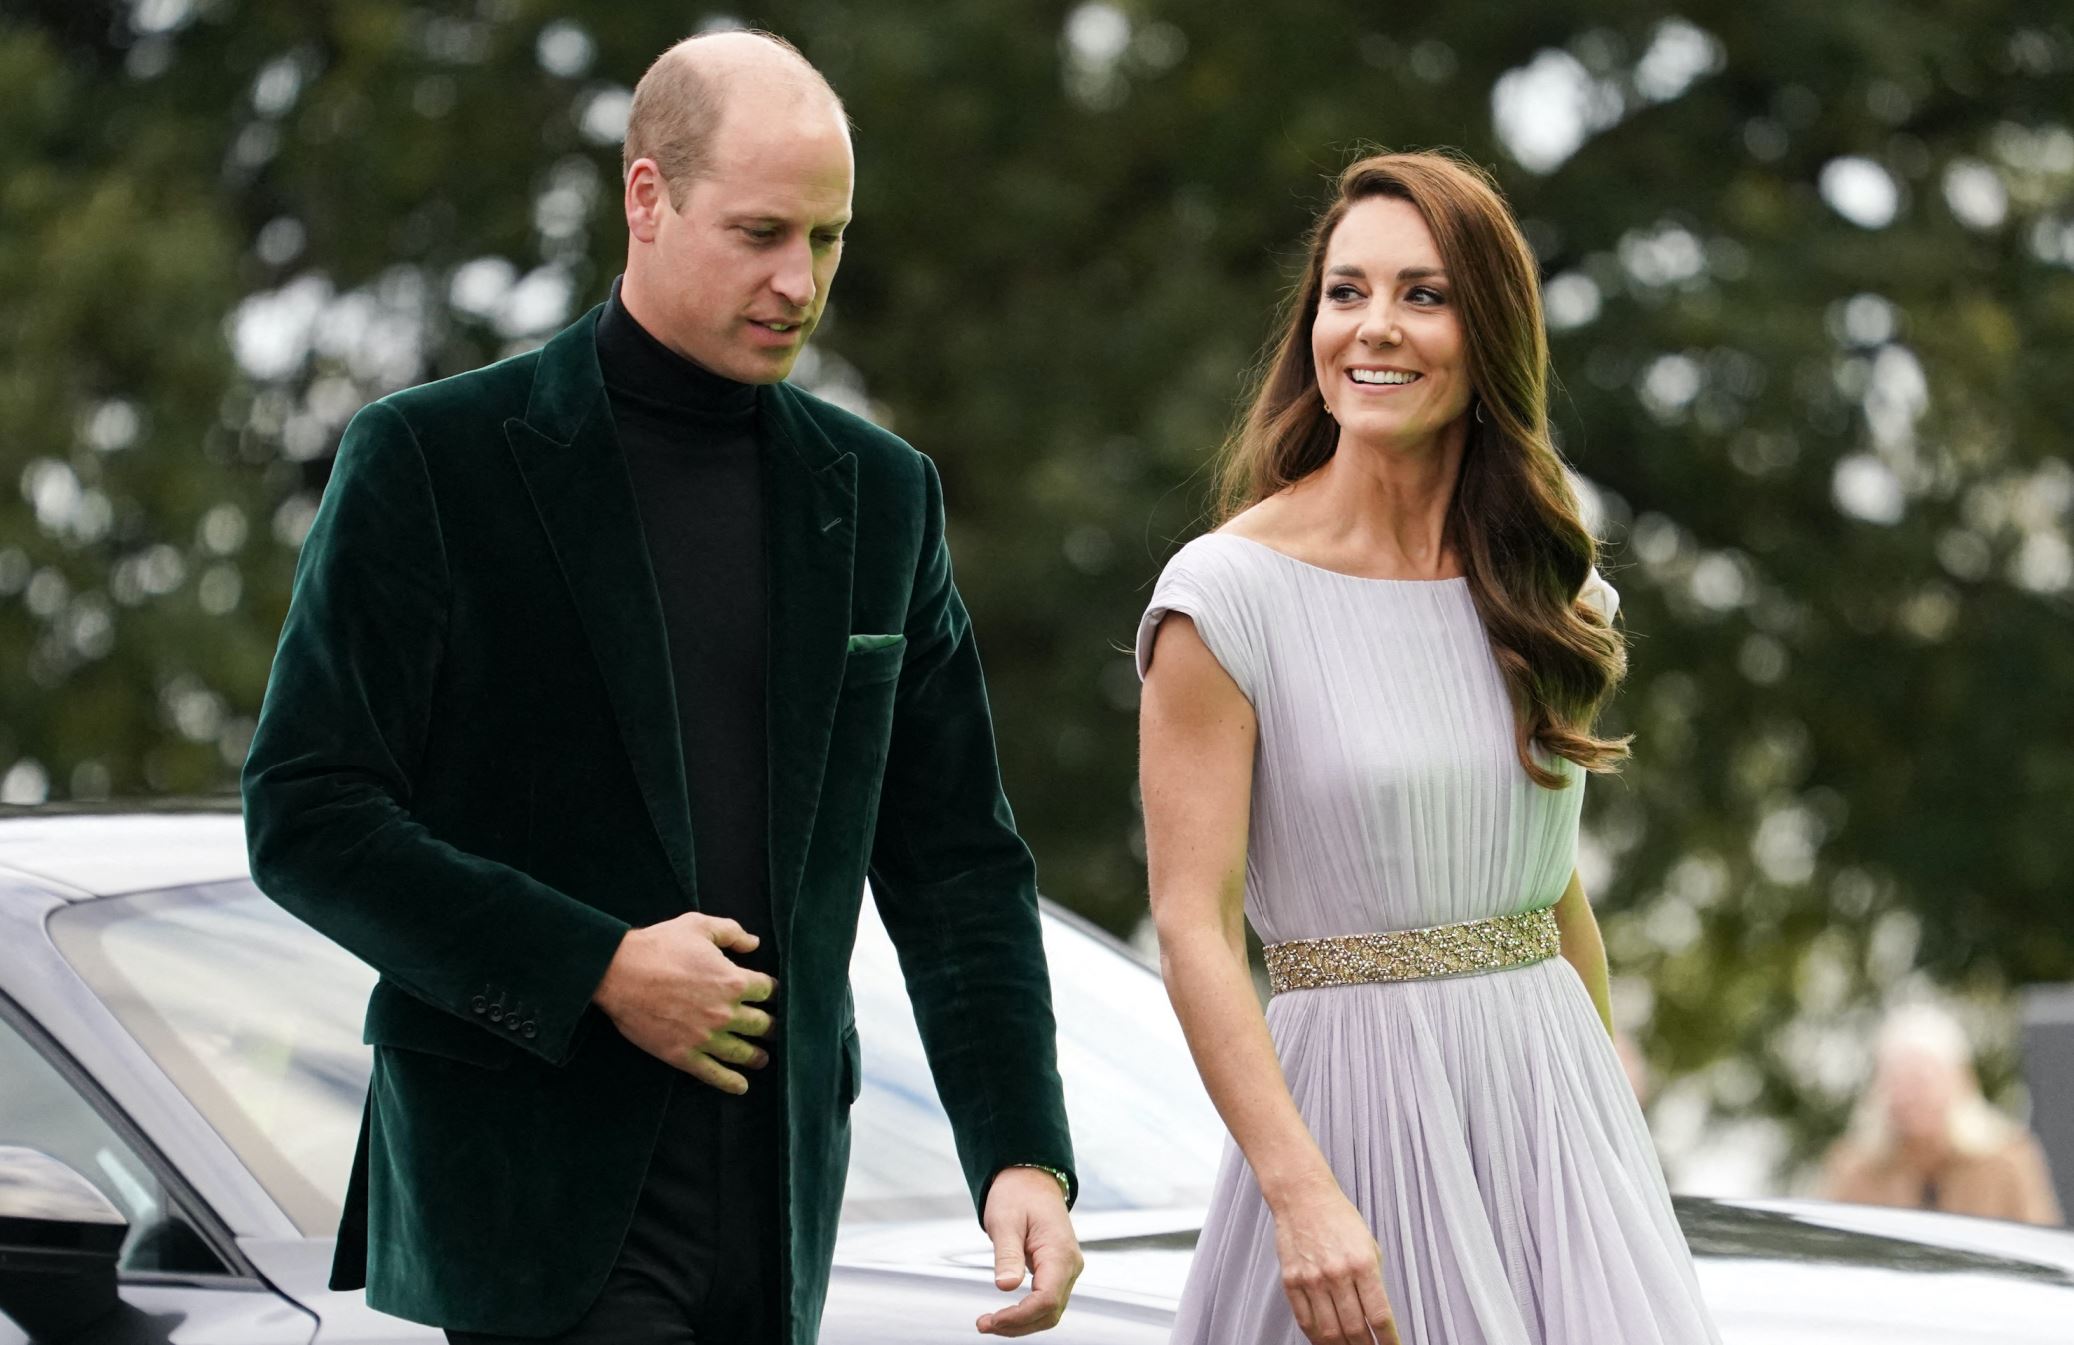 Le Prince William et Kate Middleton… Ces stars avaient pourtant rompu auparavant !